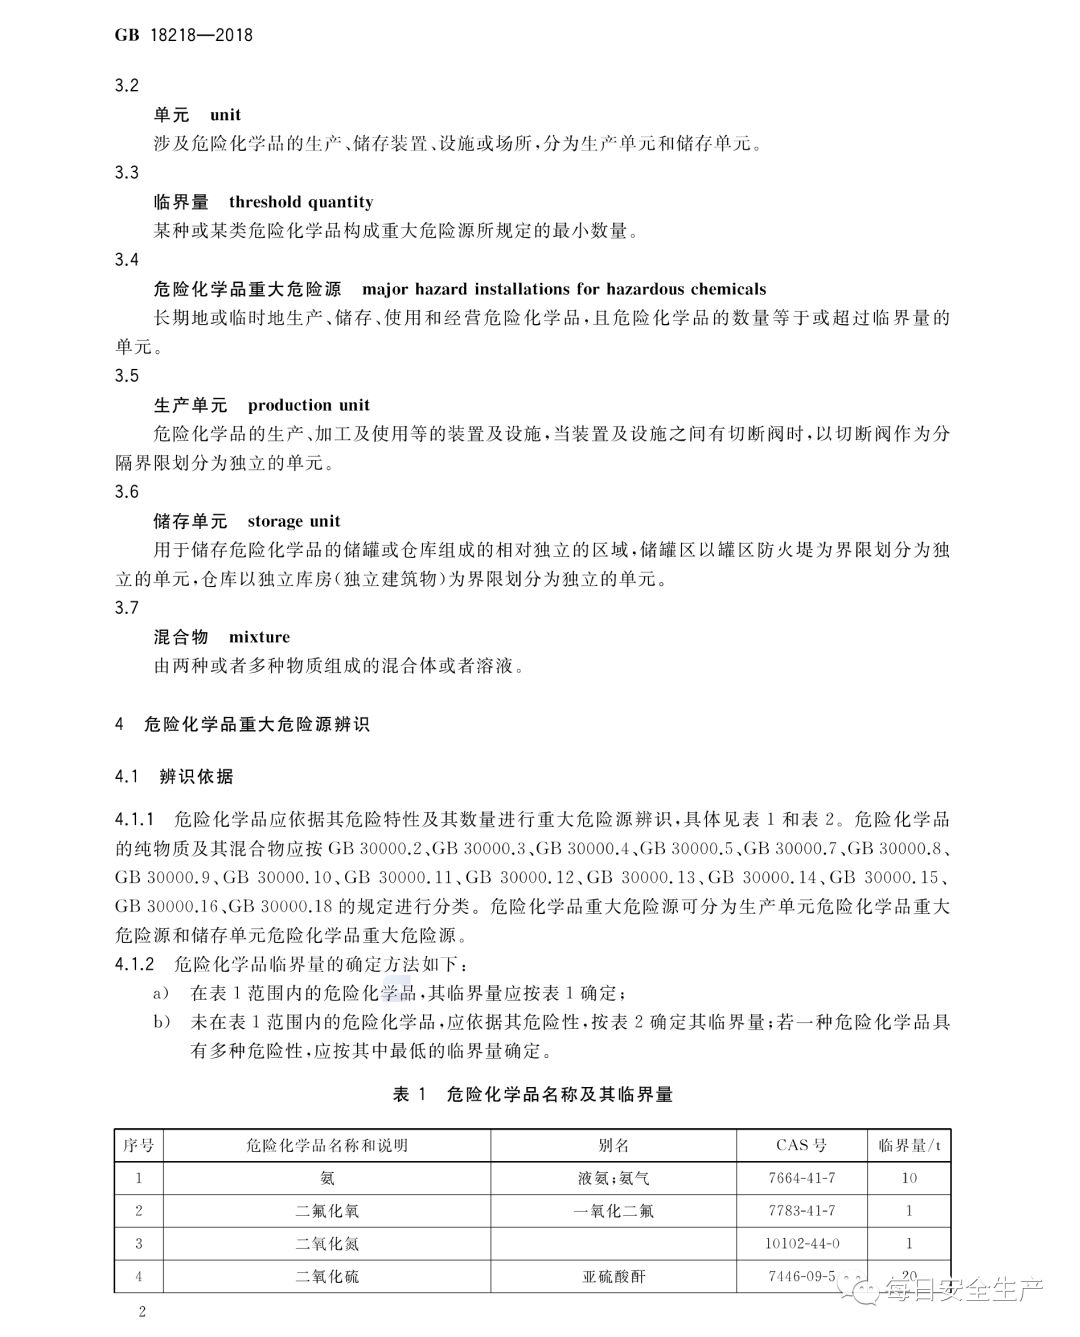 中国安科院关于危险化学品重大危险源罐区单元划分的咨询请求的复函(图7)